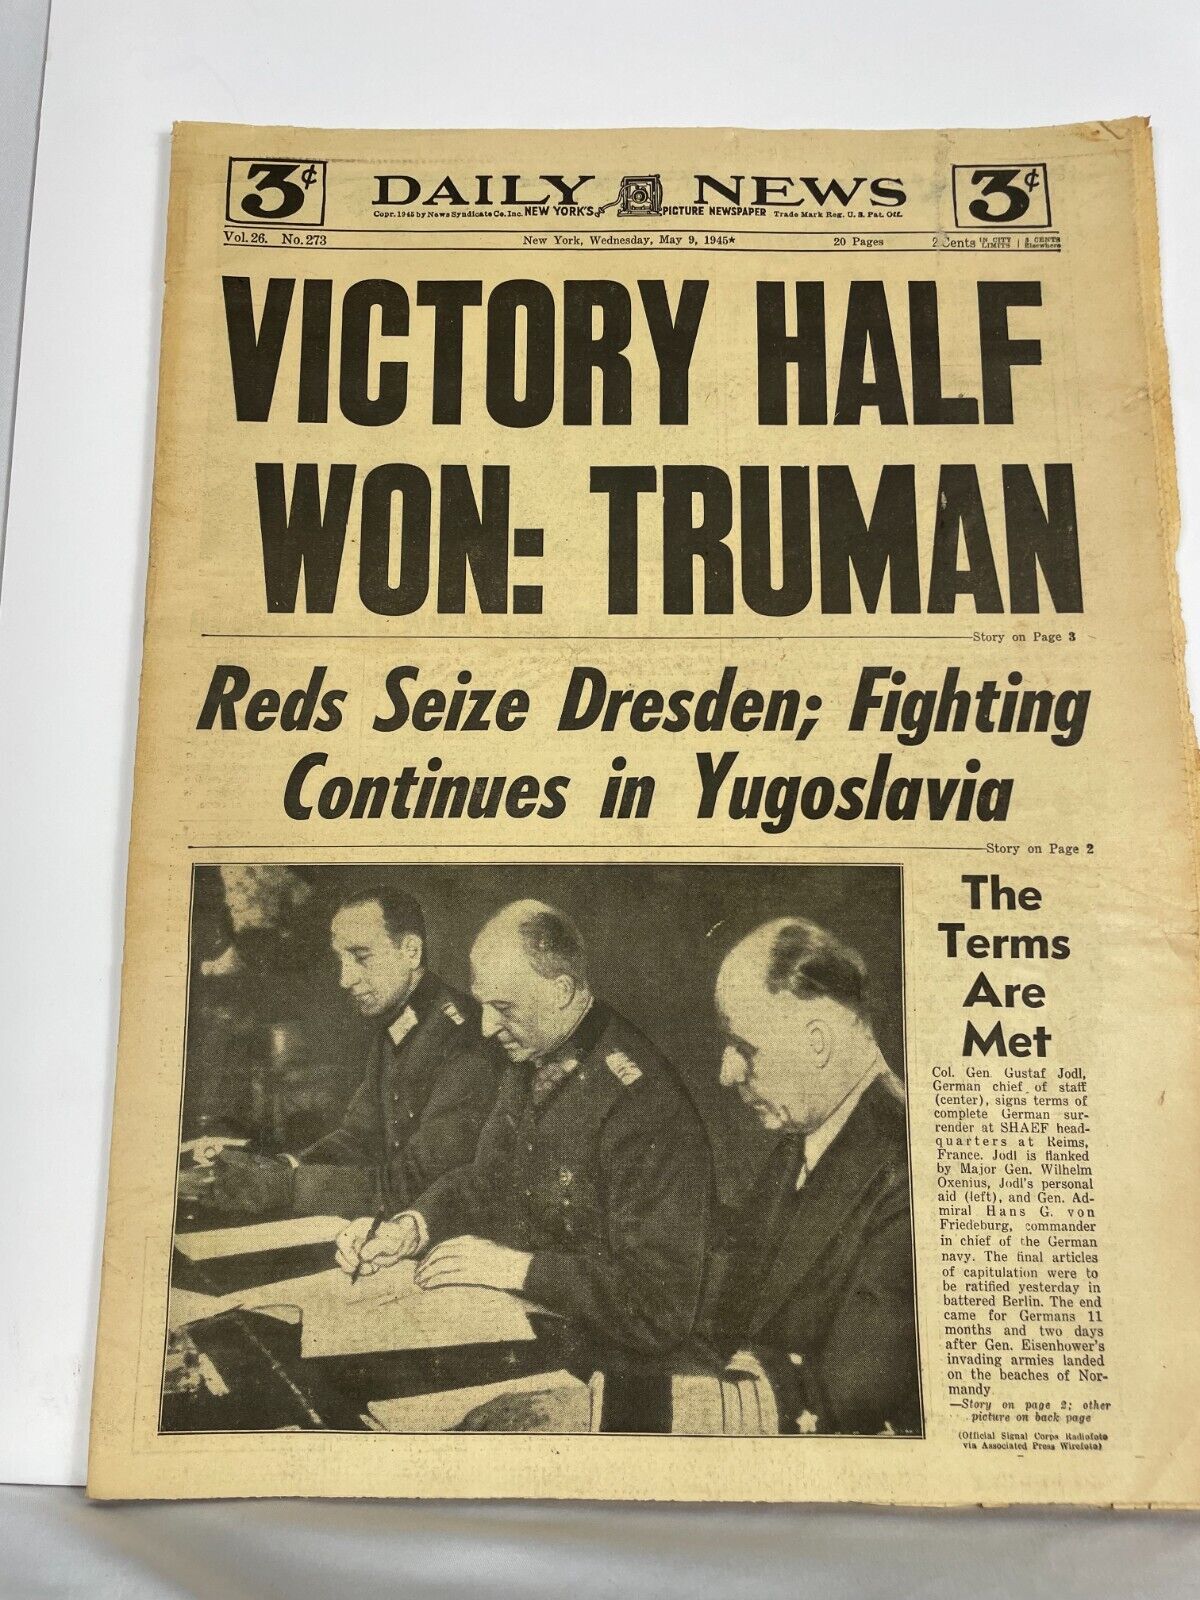 Daily News New York Victory Half Won: Truman Vol. 26 No, 273, May 9th, 1943